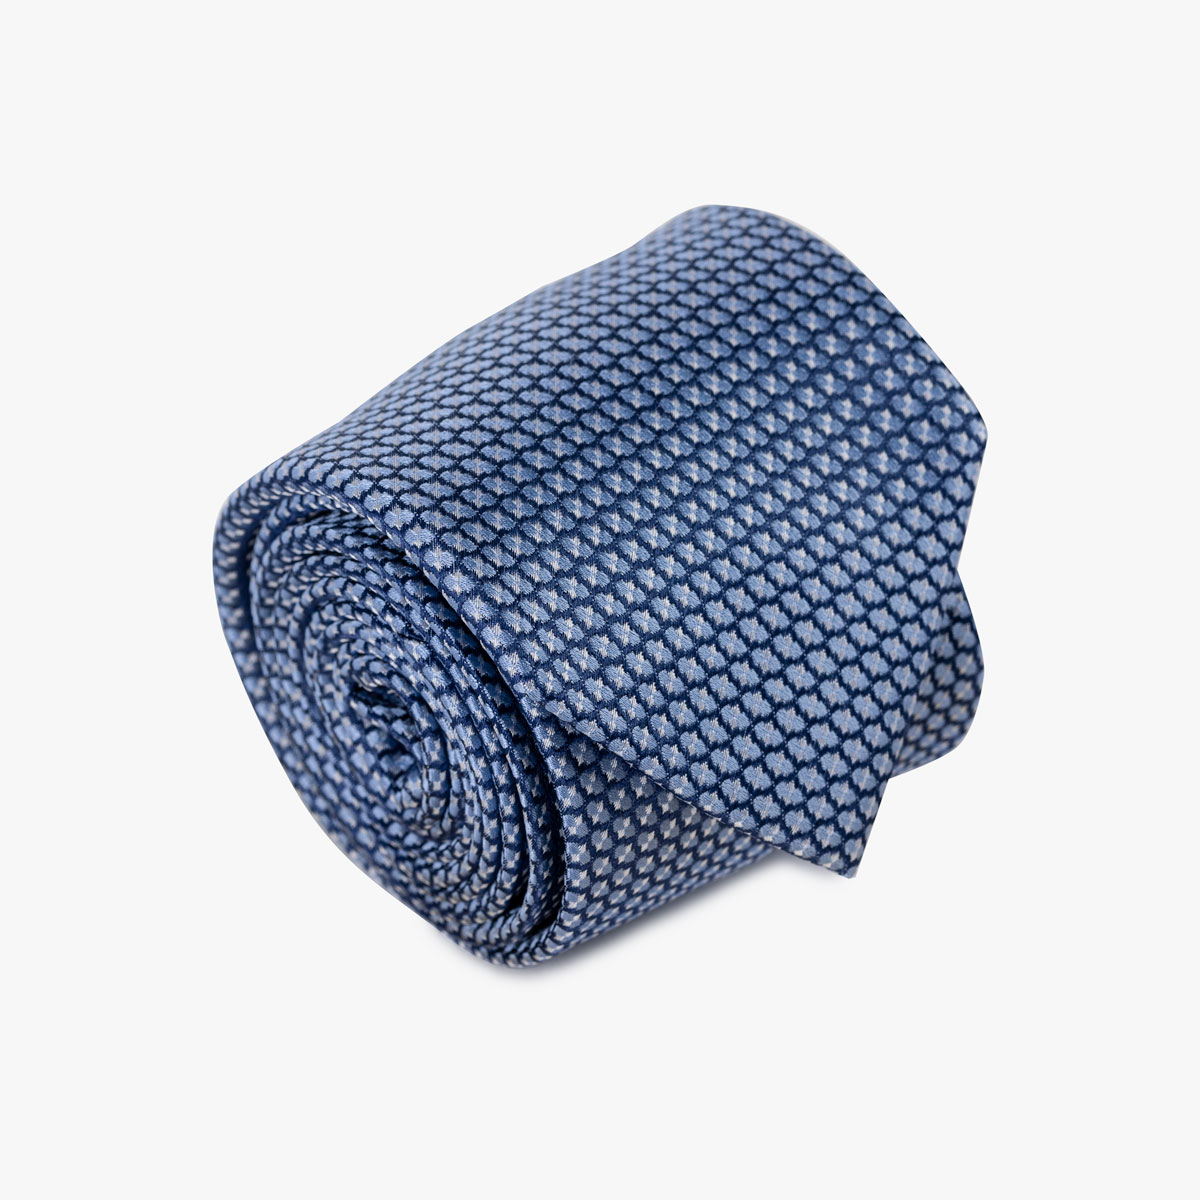 Krawatte mit geometrischem Muster in blau